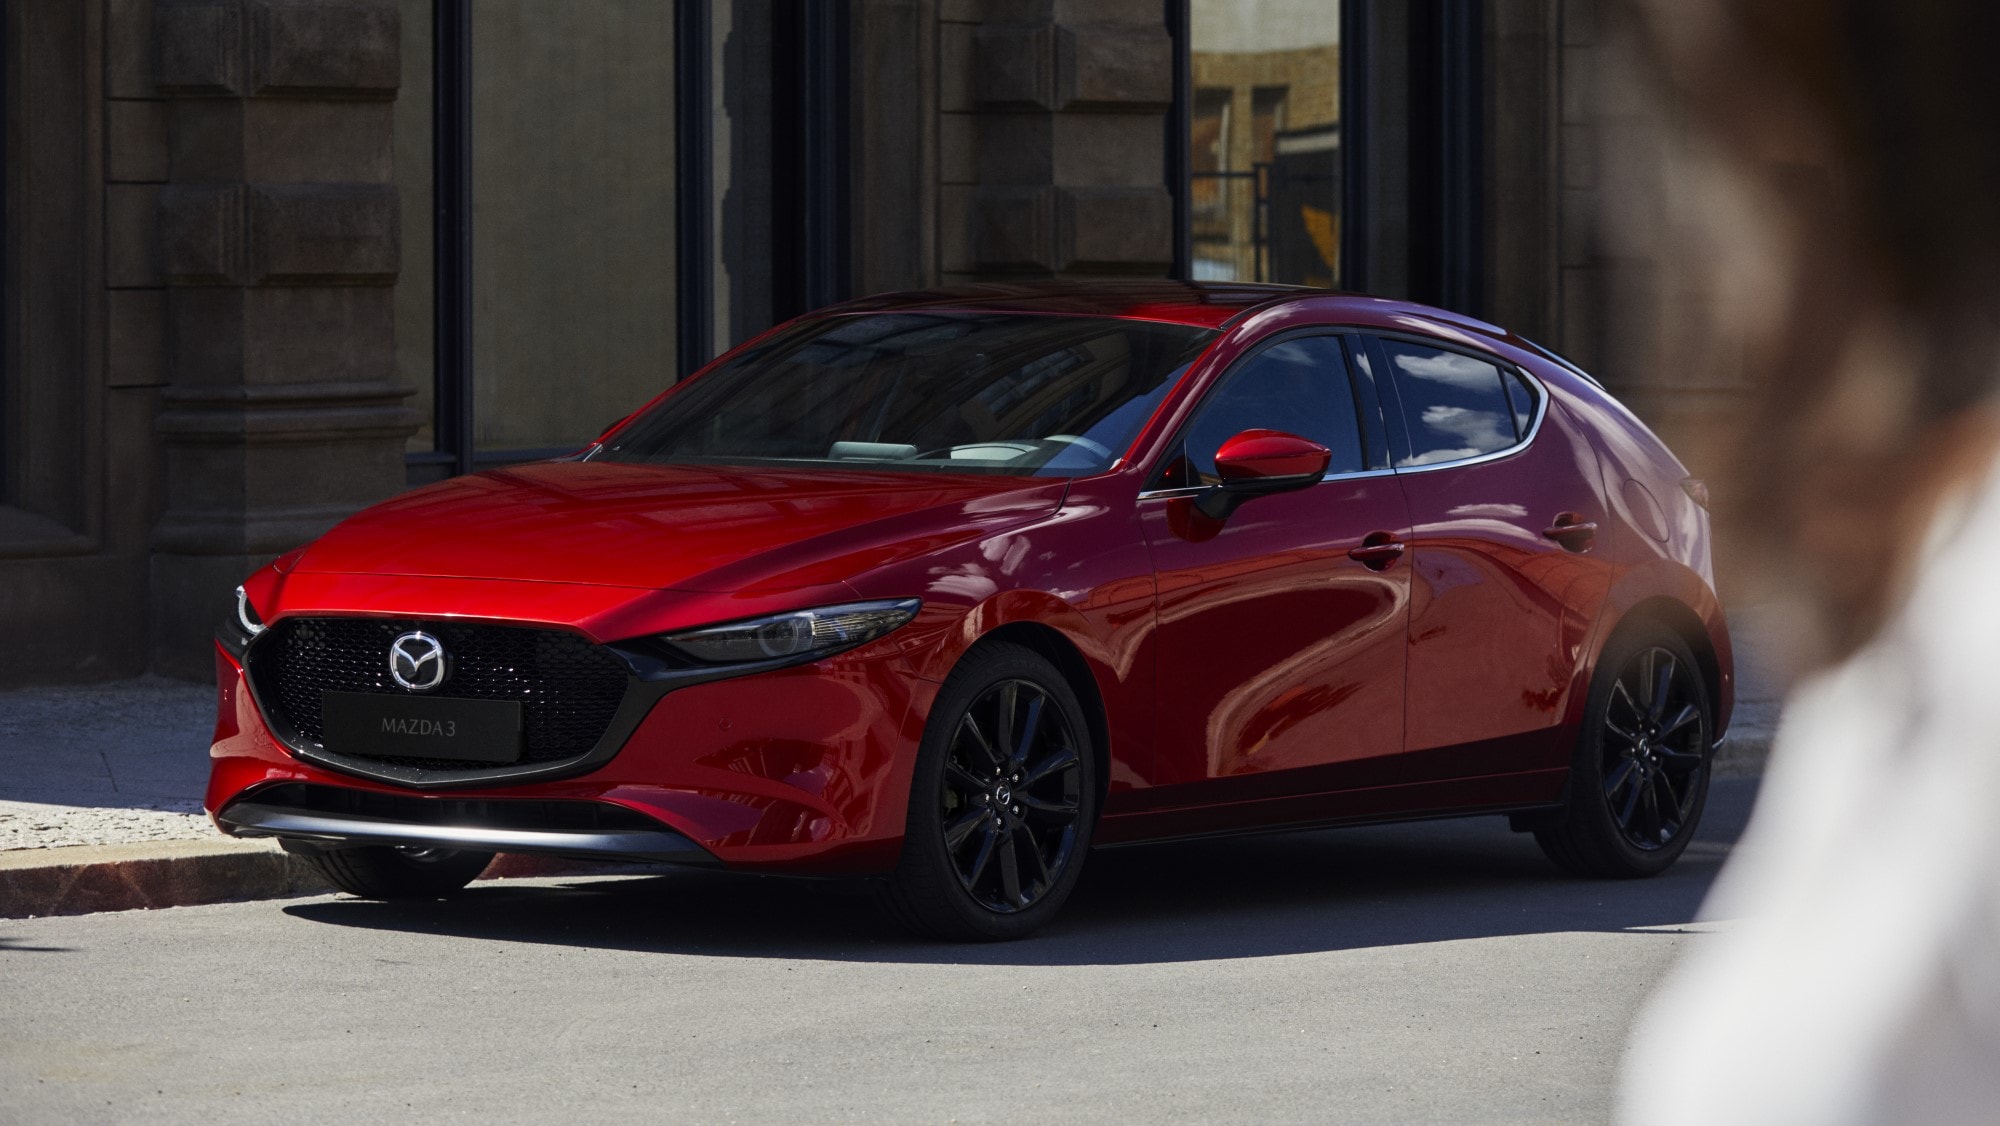 Đánh giá Mazda 3 2019 và thông số kỹ thuật của xe  MuasamXecom